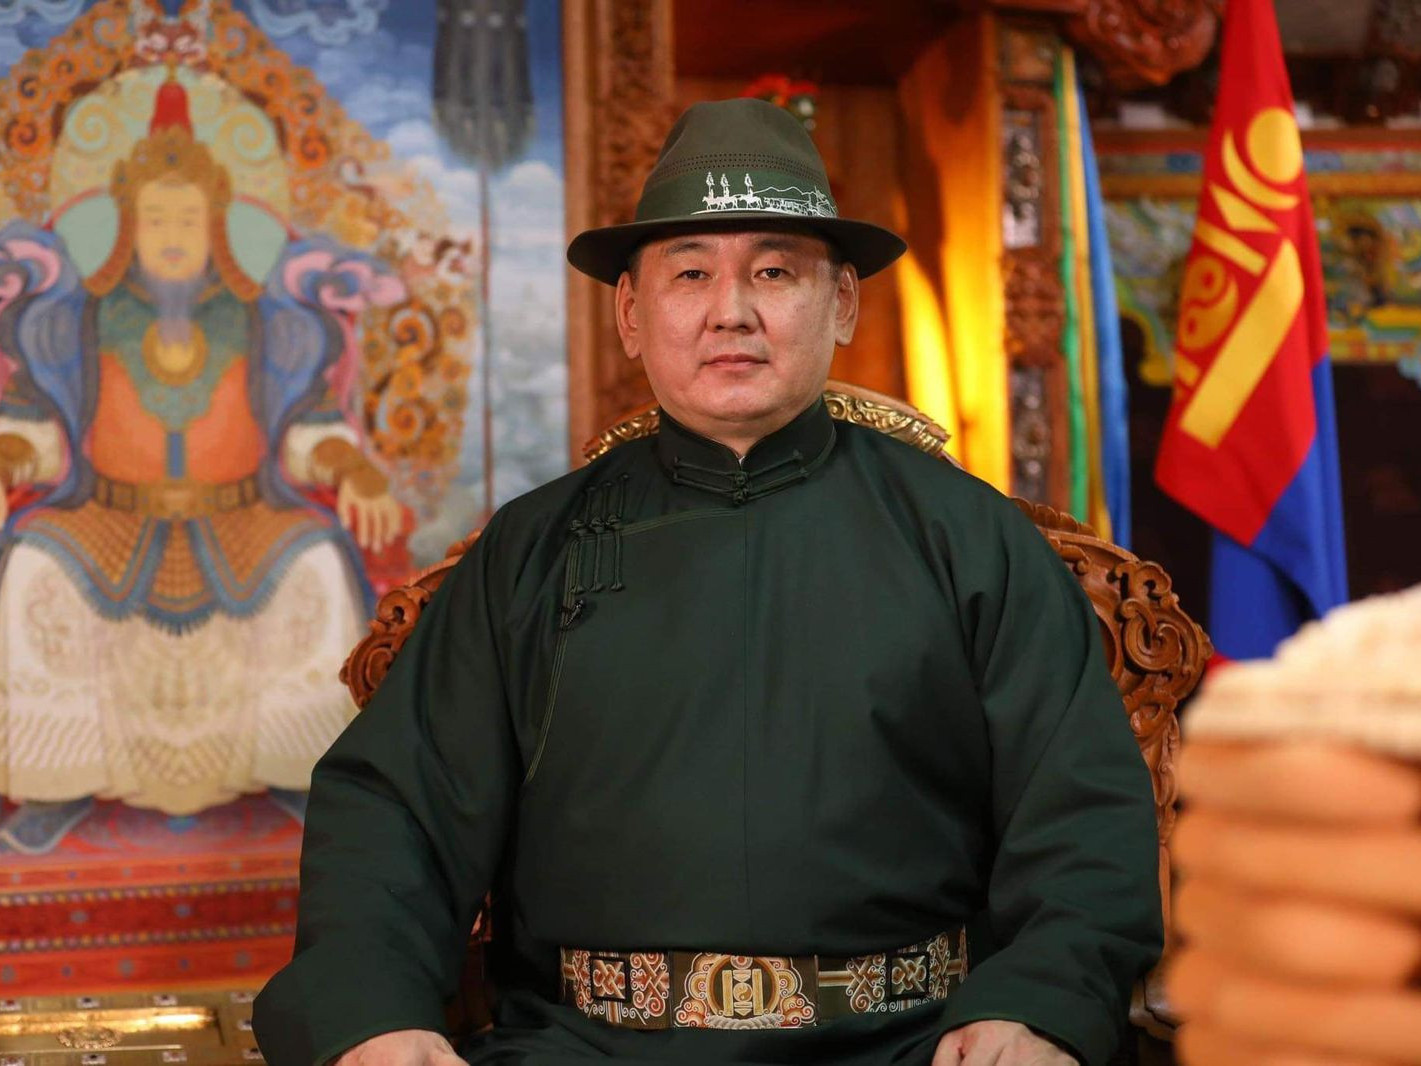 ВИДЕО: "Туулай жил монголчуудын эдийн засаг сэргэсэн хөгжил дэвшлийн жил байх болно" гэж Ерөнхийлөгч У.Хүрэлсүх мэндчилгээ дэвшүүлжээ